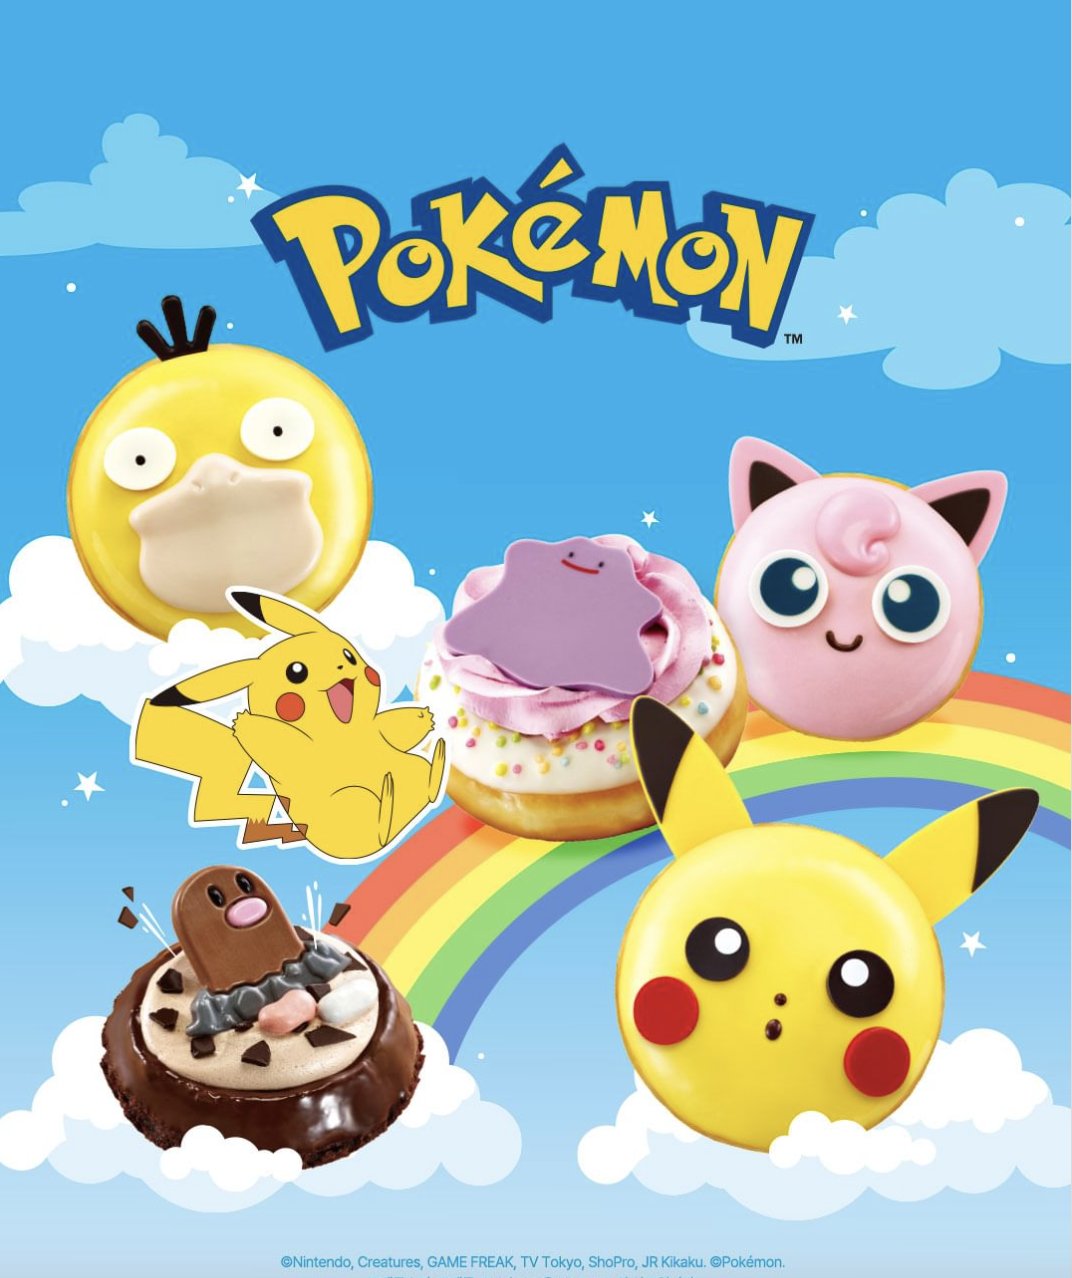 Pokémon x Krispy Kreme: Conoce los detalles de esta adorable y deliciosa colaboración 1